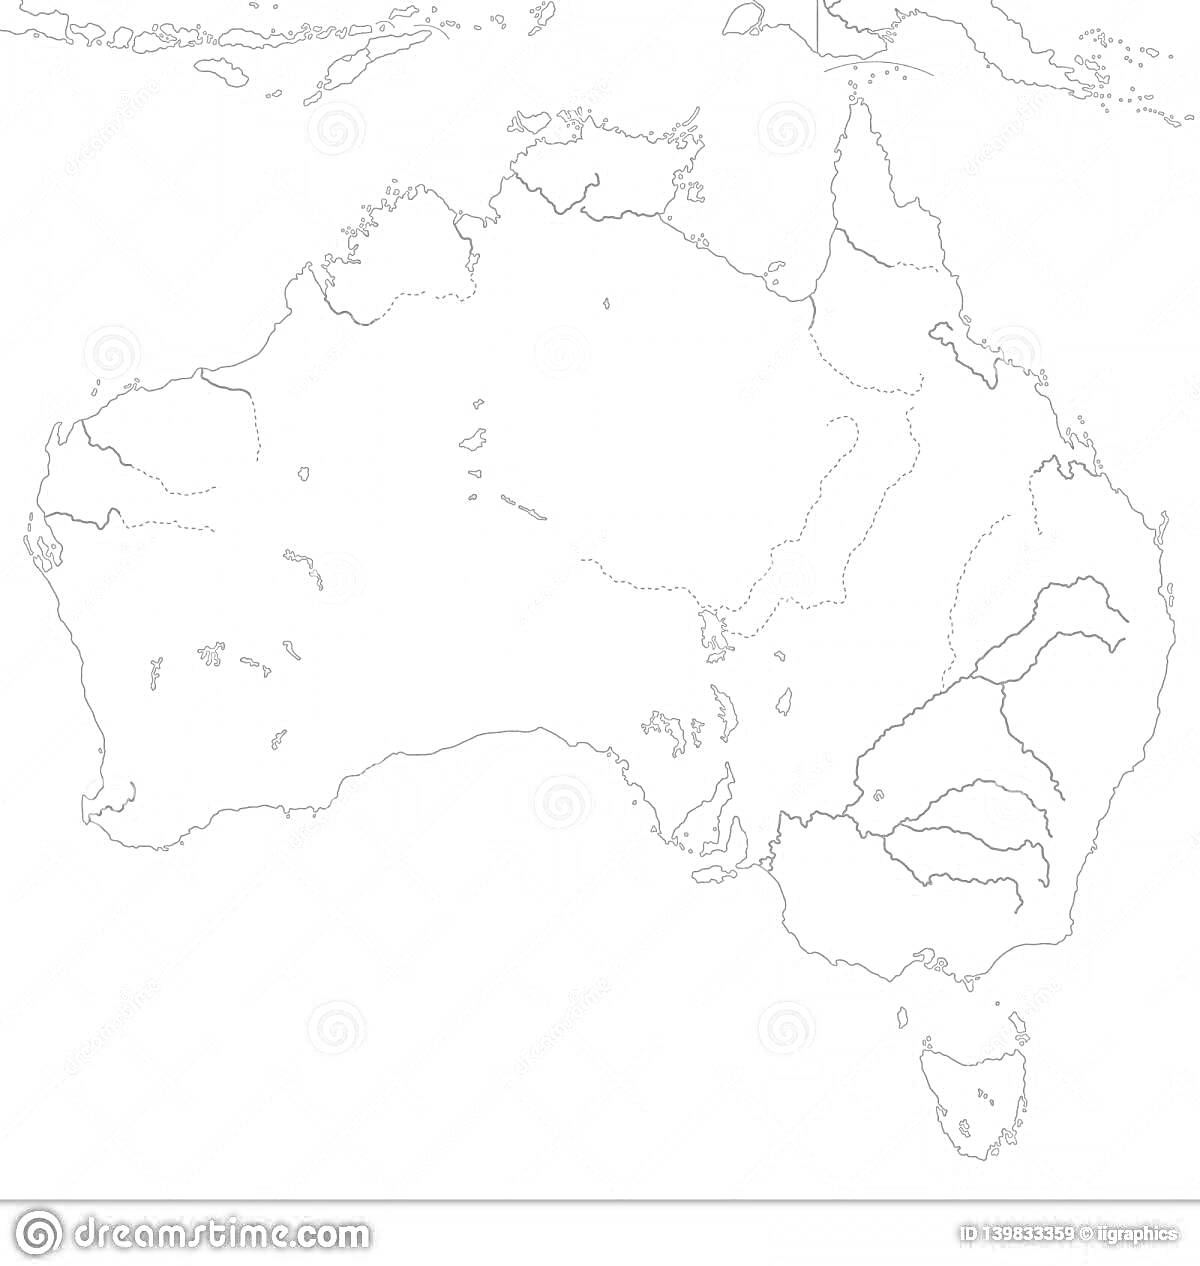 Раскраска Раскраска с картой Австралии, с нанесёнными реками и озёрами на материке и острове Тасмания